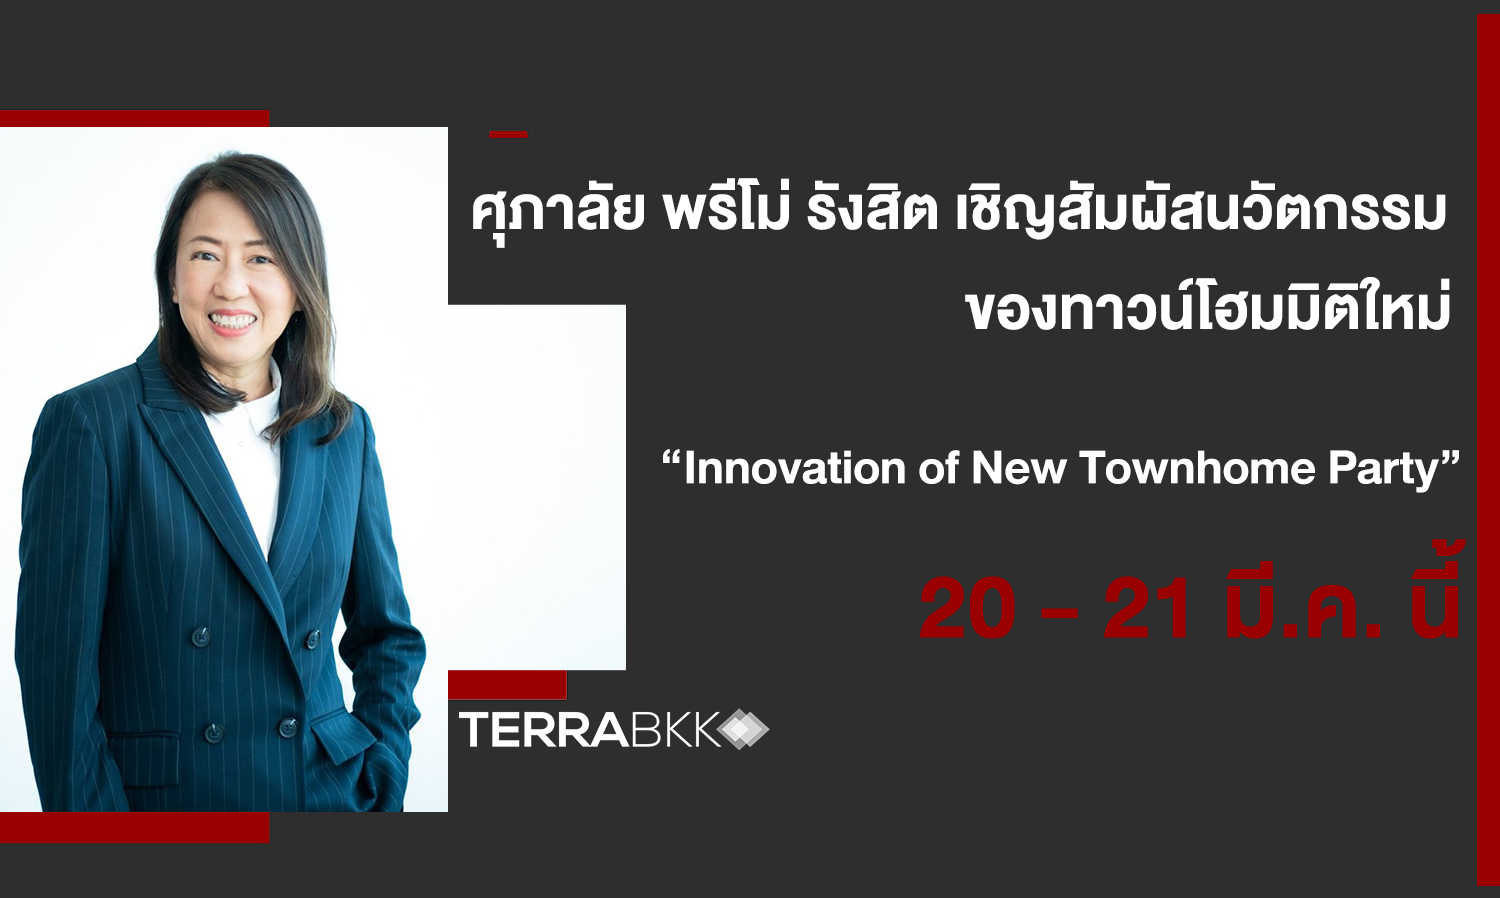 ศุภาลัย พรีโม่ รังสิต ขอเชิญสัมผัสนวัตกรรม ของทาวน์โฮมมิติใหม่    “Innovation of New Townhome Party”  20 - 21 มี.ค. นี้